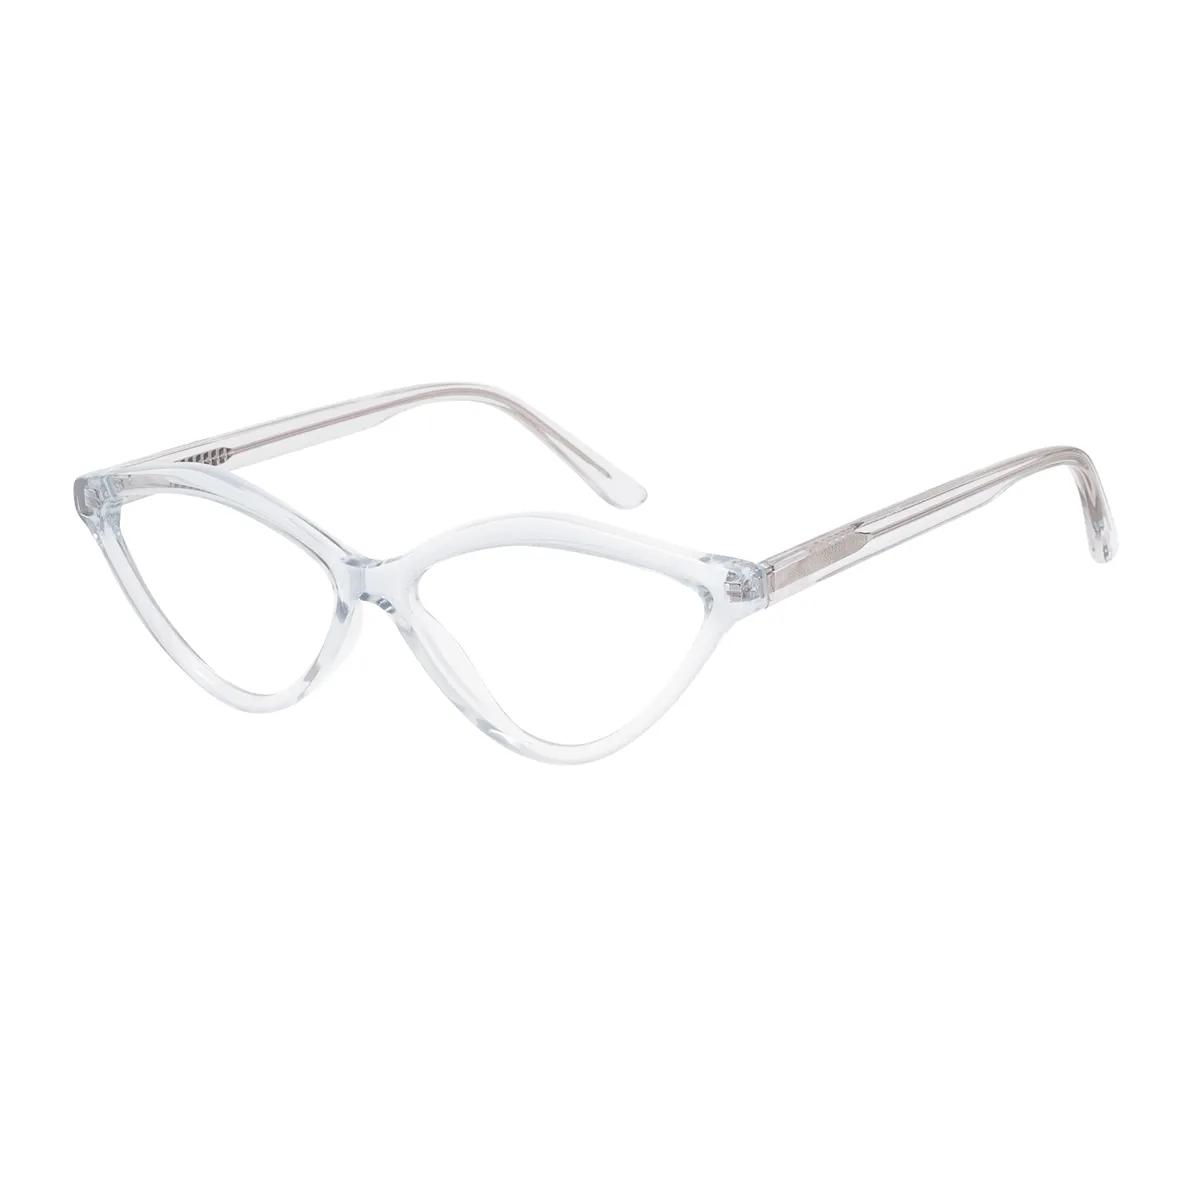 Naomi - Cat-eye Translucent Glasses for Women